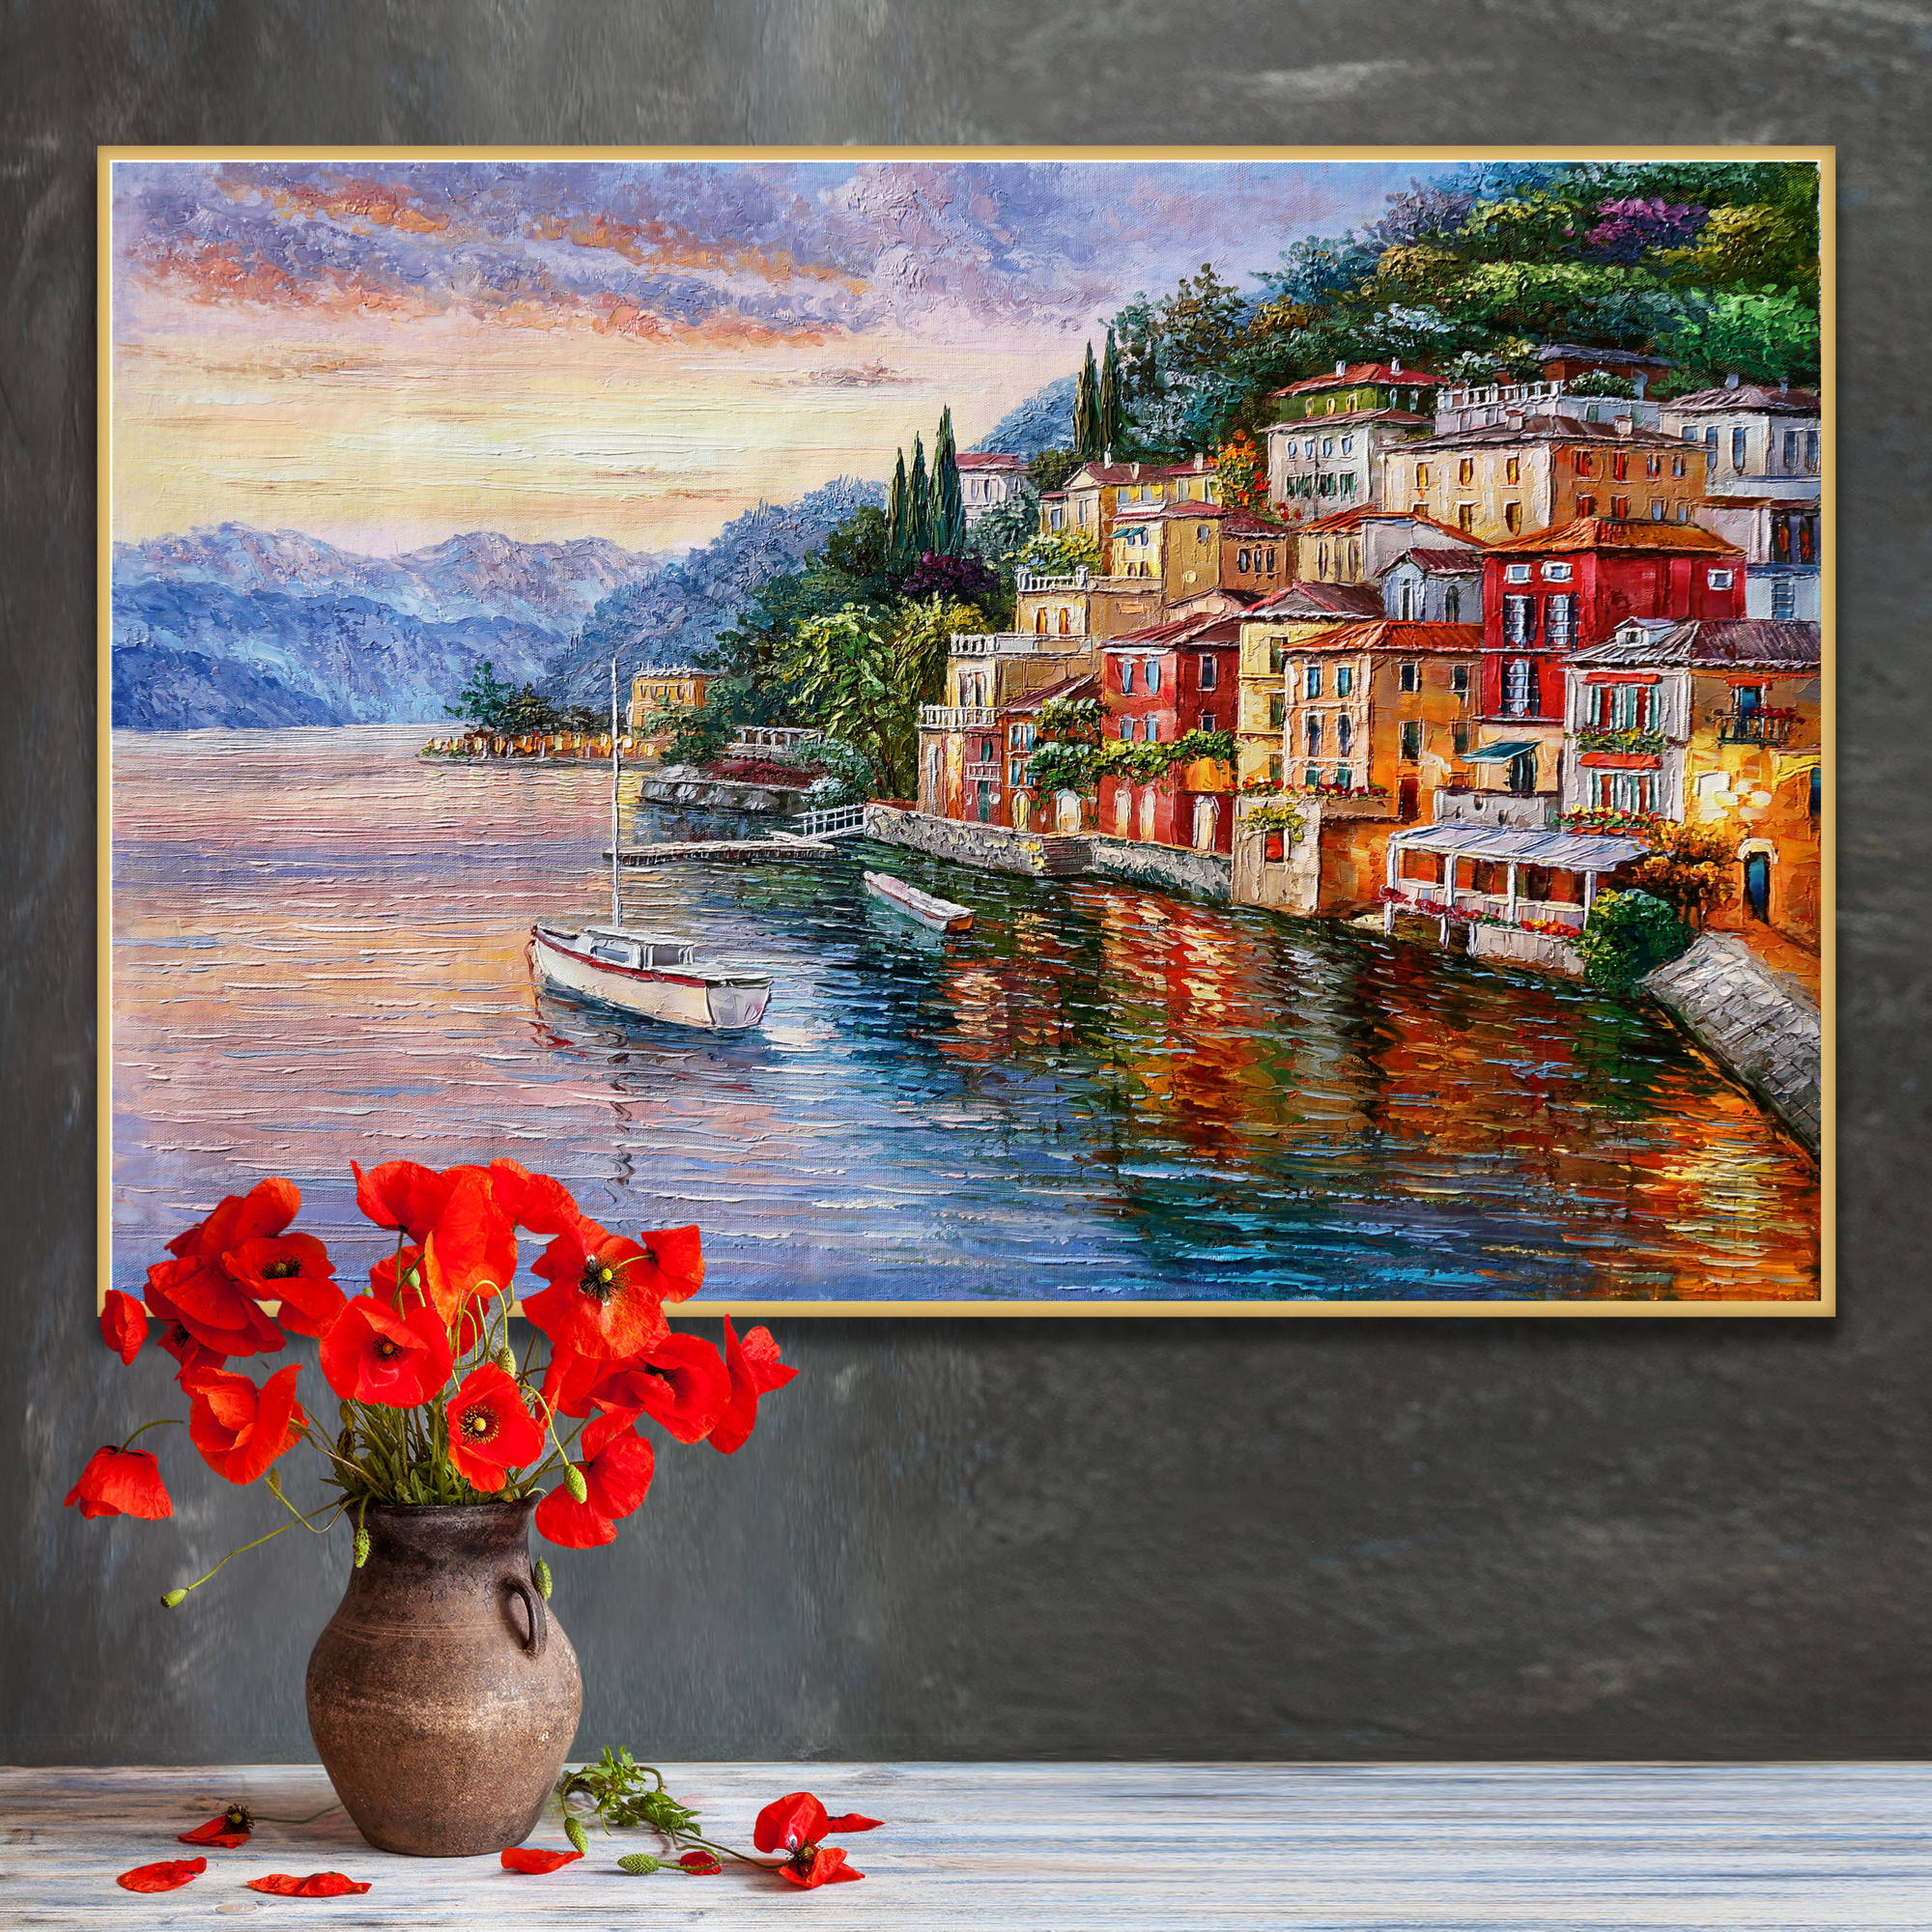 Dipinto di un Varenna sul lago di Como con case colorate e riflessi sull'acqua